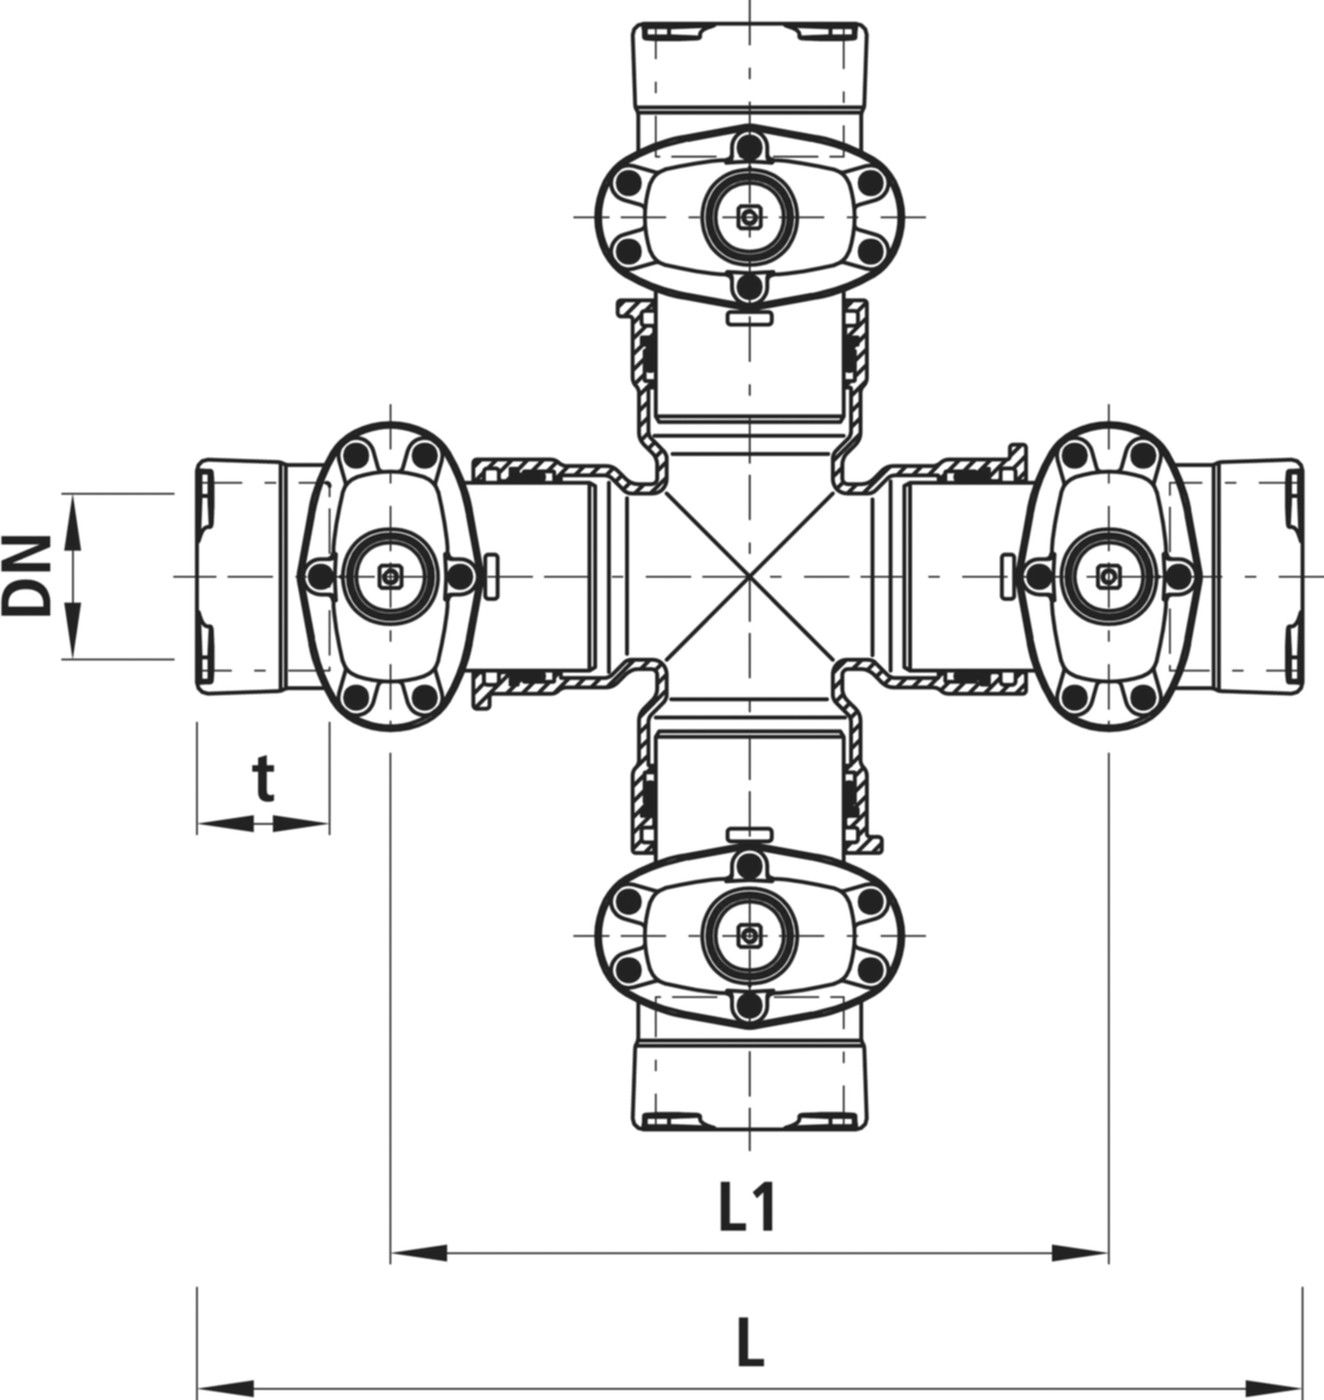 Combi-4 mit Steckmuffen Baio Gas 4435 DN 100/100 - Hawle Armaturen